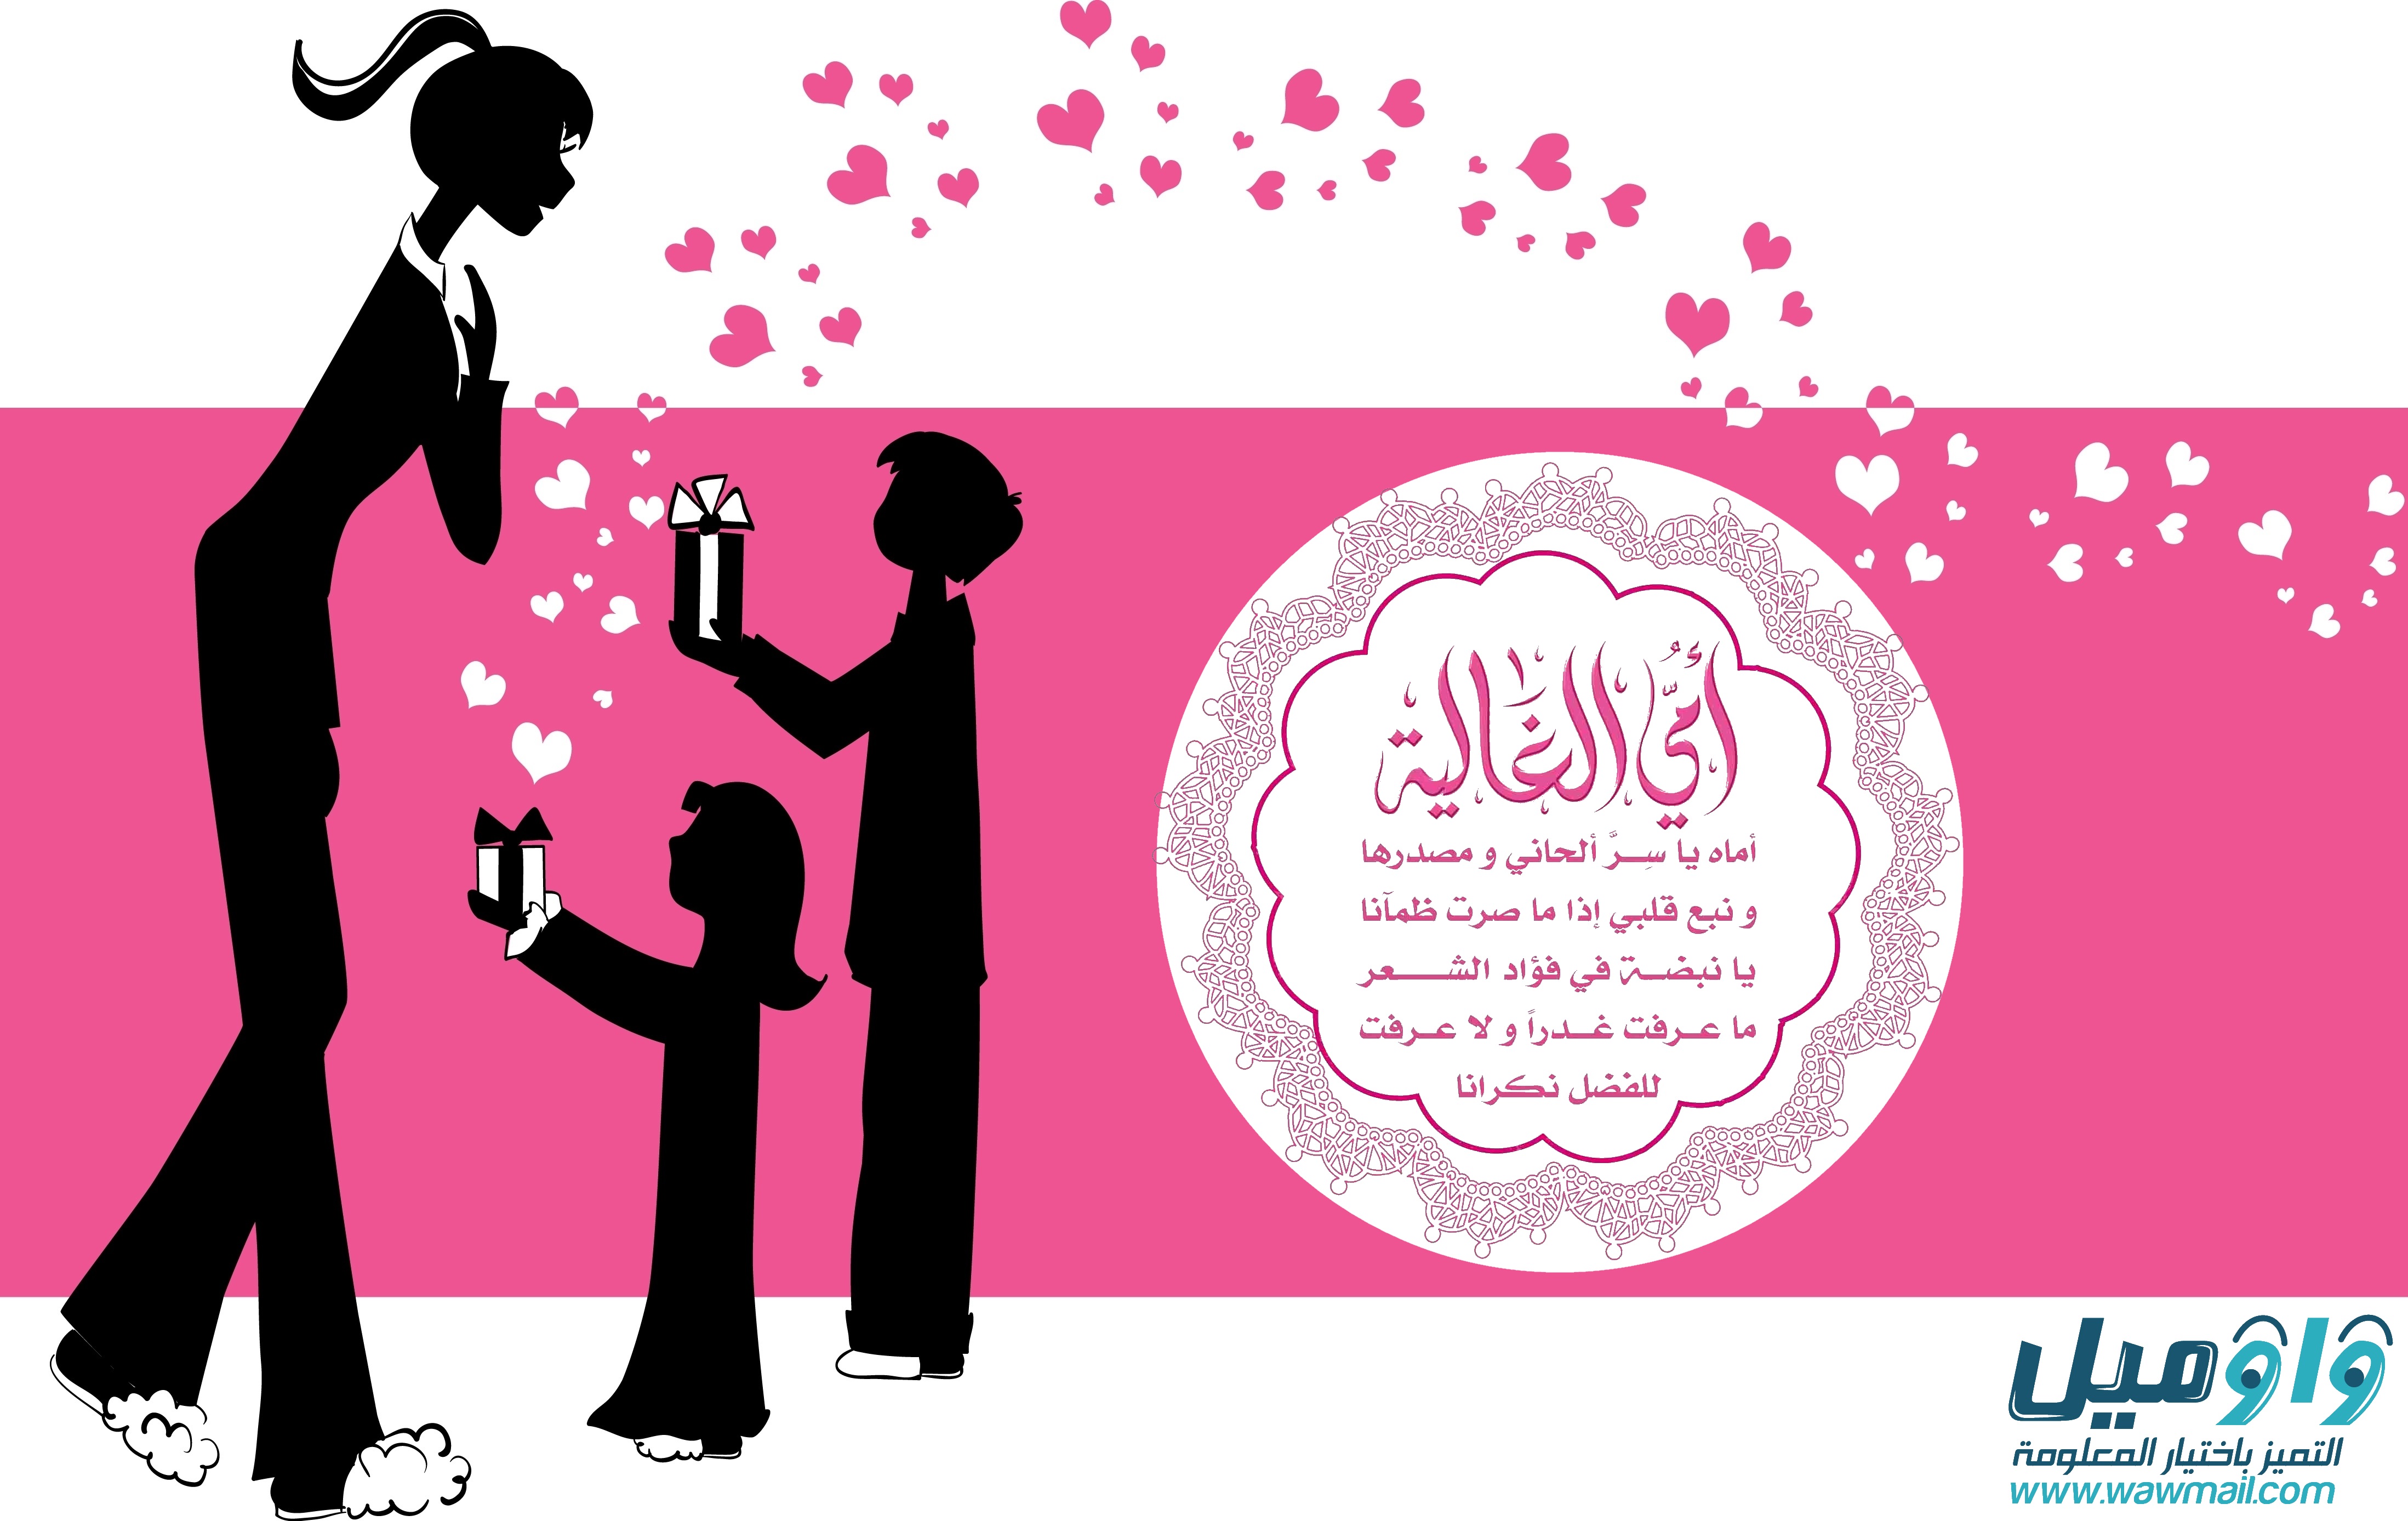 كيف ظهر عيد الأم وكيف وصل إلى العالم العربي؟